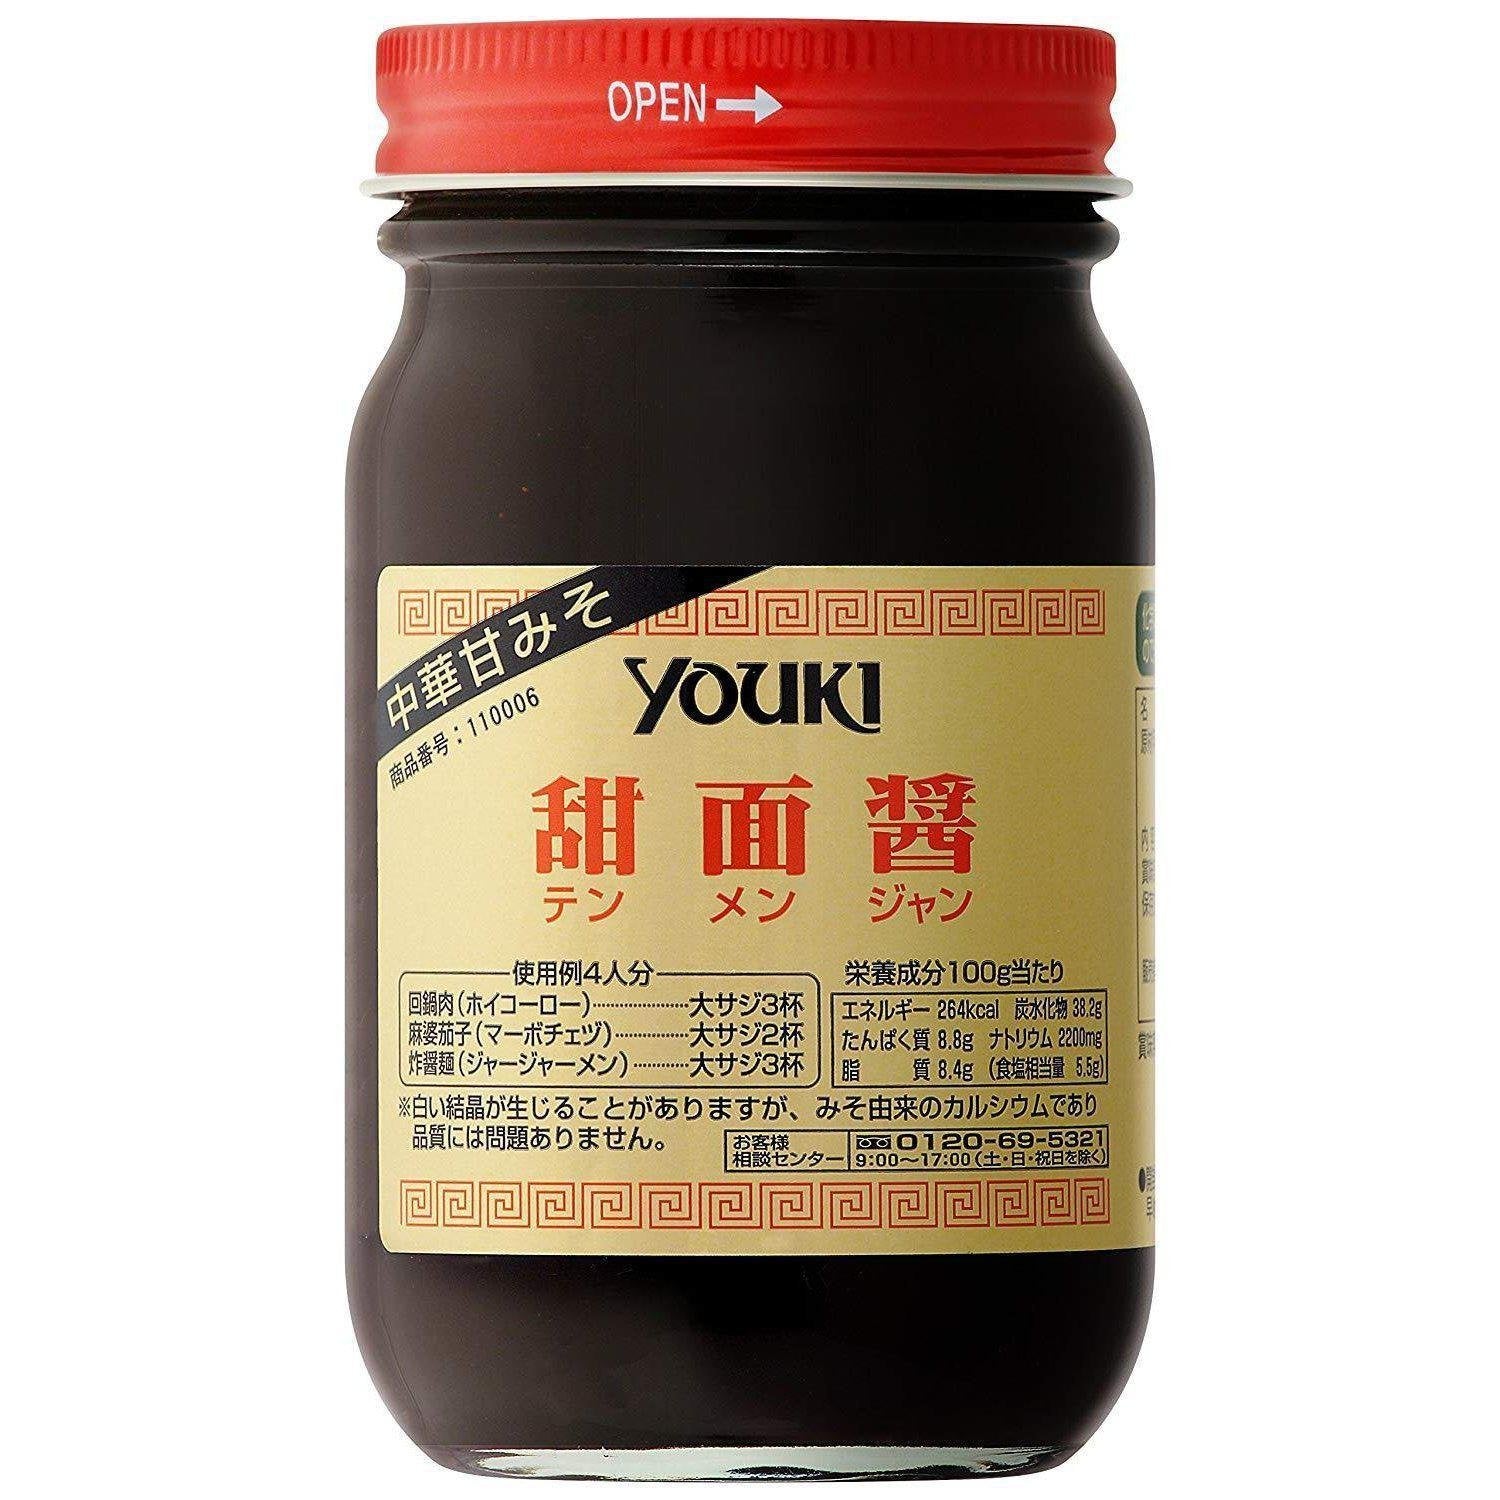 P-1-YOKI-TNMJAN-220-Youki Tenmenjan Sweet Soybean Paste Seasoning 220g.jpg